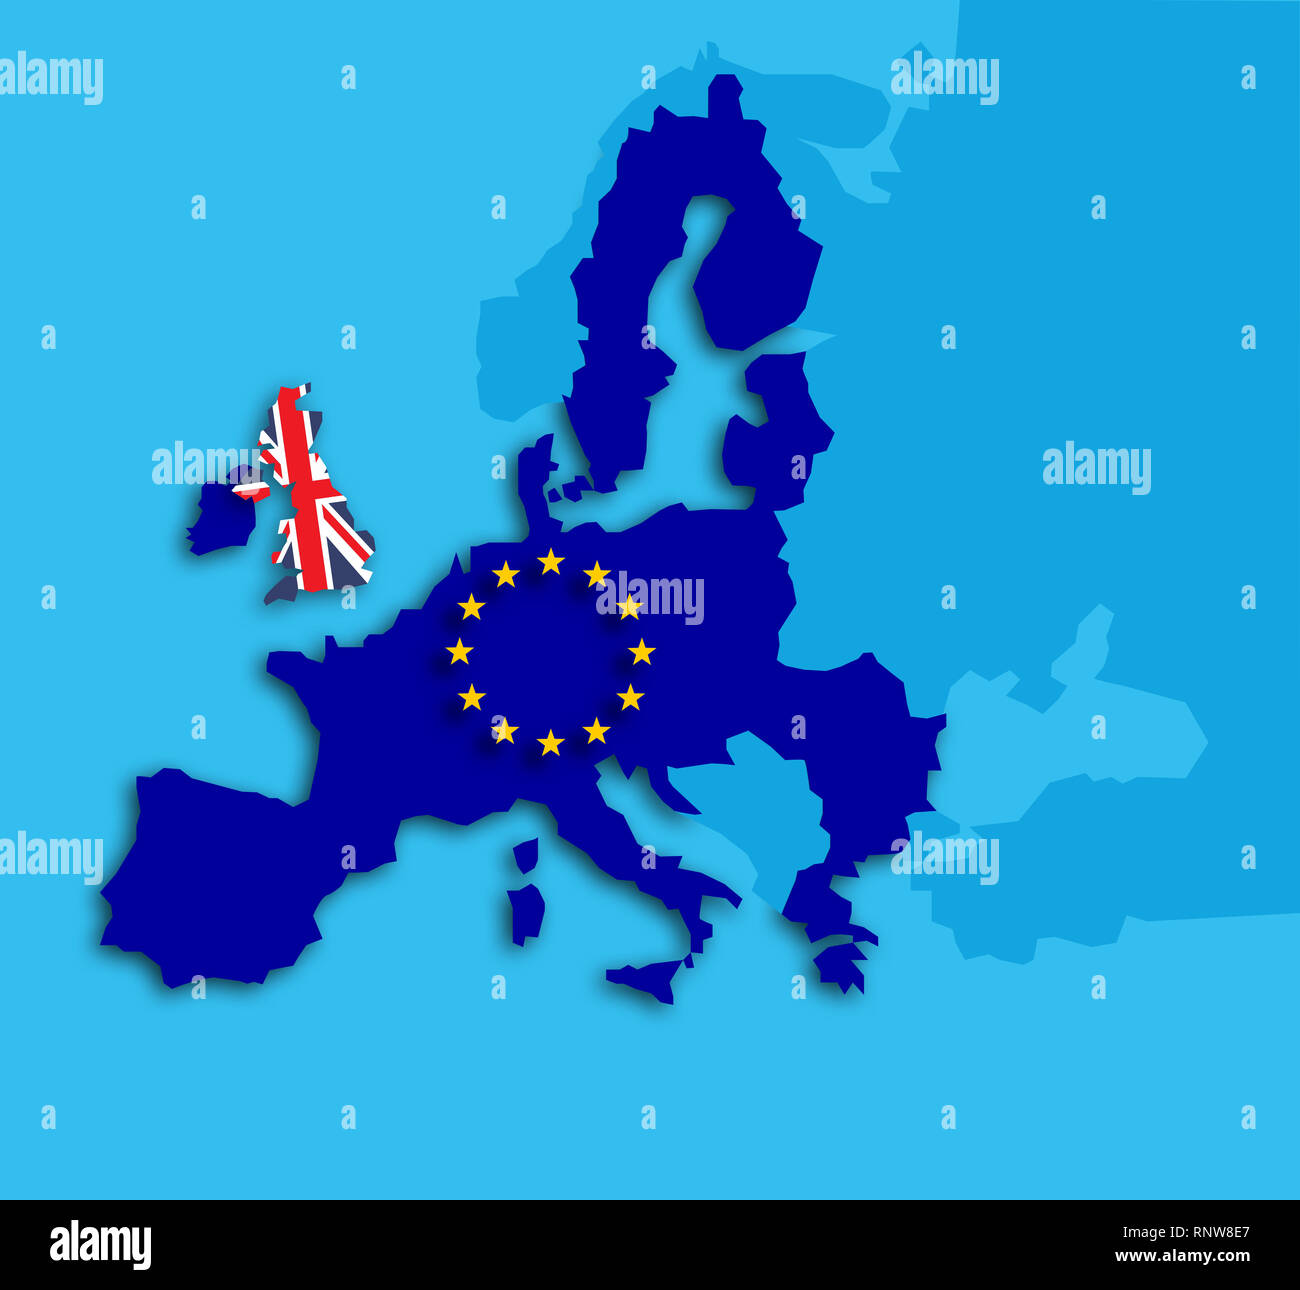 Brexit Referendum Grossbritannien Konzept Vereinigtes Konigreich Grossbritannien Und England Eu Verlassen Mit Uk Als Flag Und Eu Stars Auf Der Karte Von Europa Mit Schlagschatten Stockfotografie Alamy